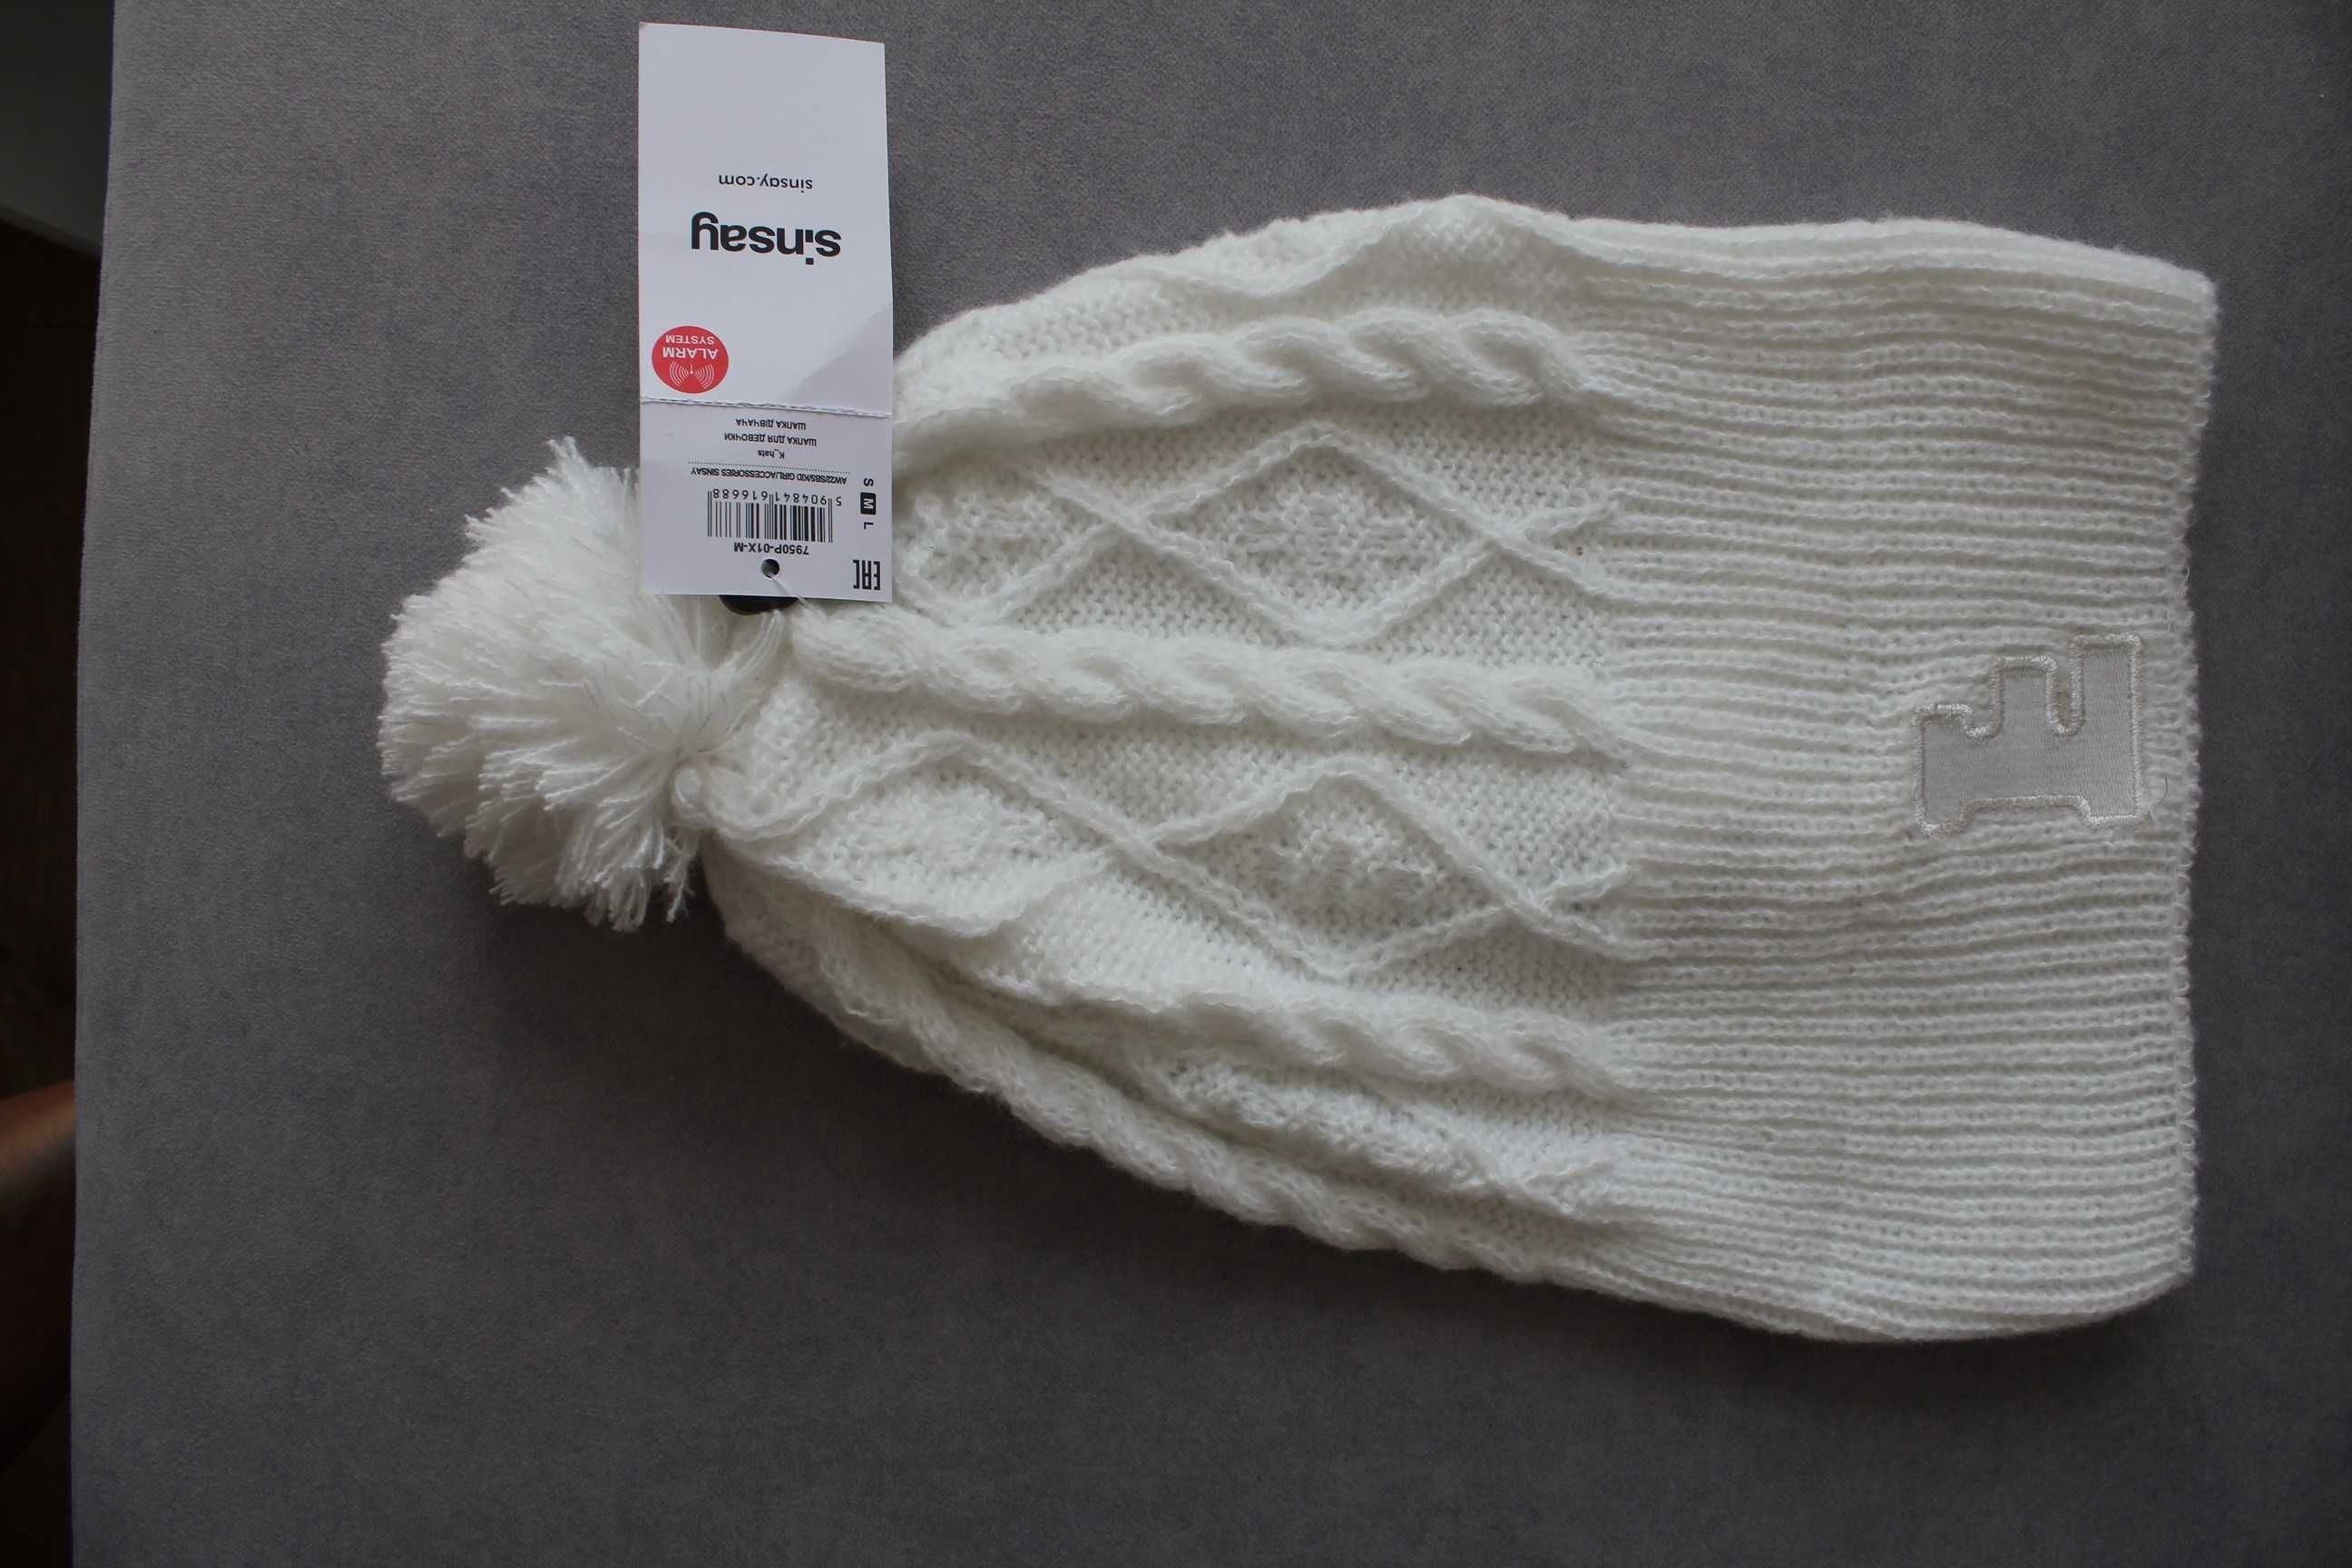 Nowa biała jesienna czapka z pomponem Sinsay rozmiar M